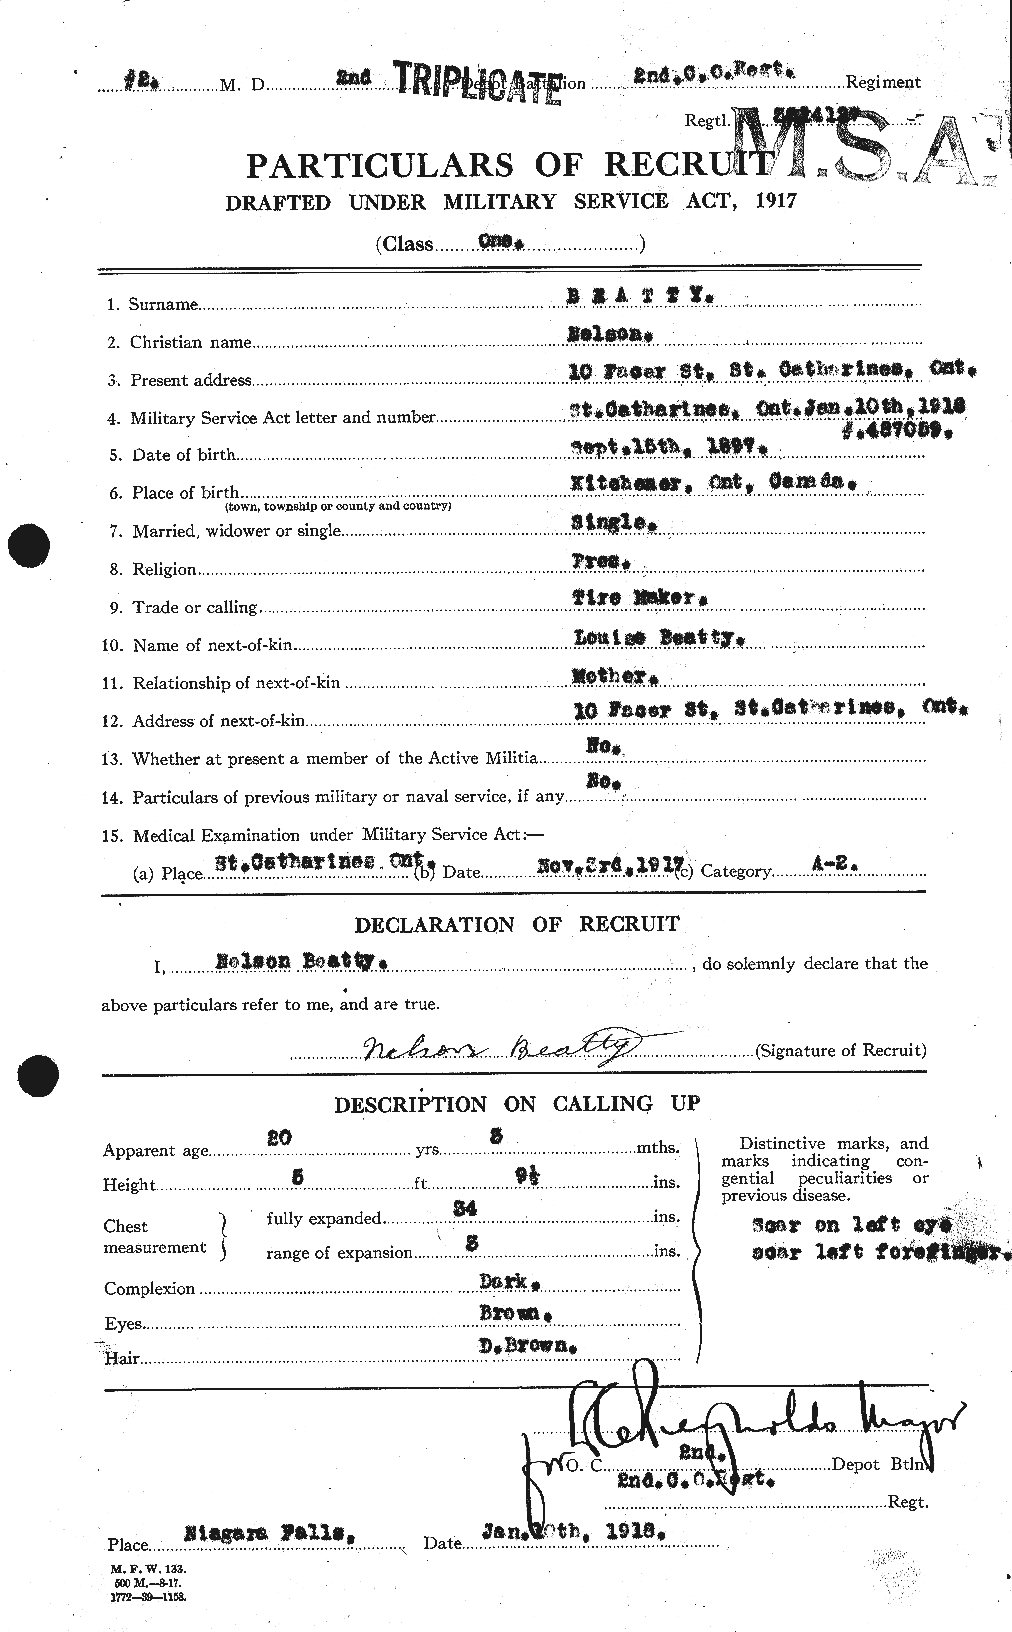 Dossiers du Personnel de la Première Guerre mondiale - CEC 236421a